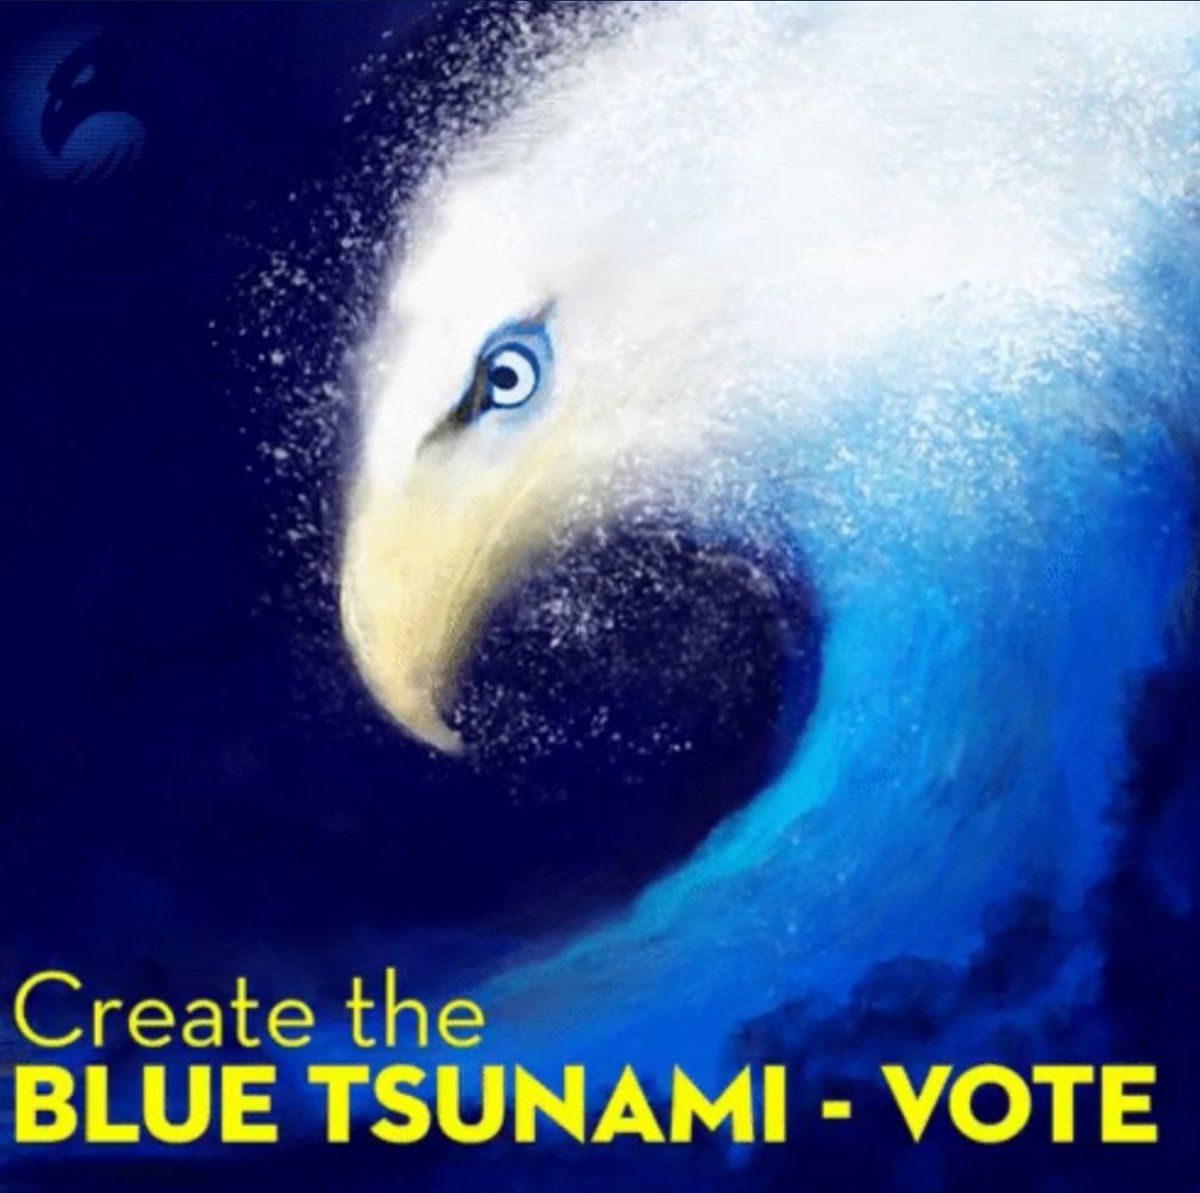 blue tsunami vote - Create the Blue Tsunami Vote